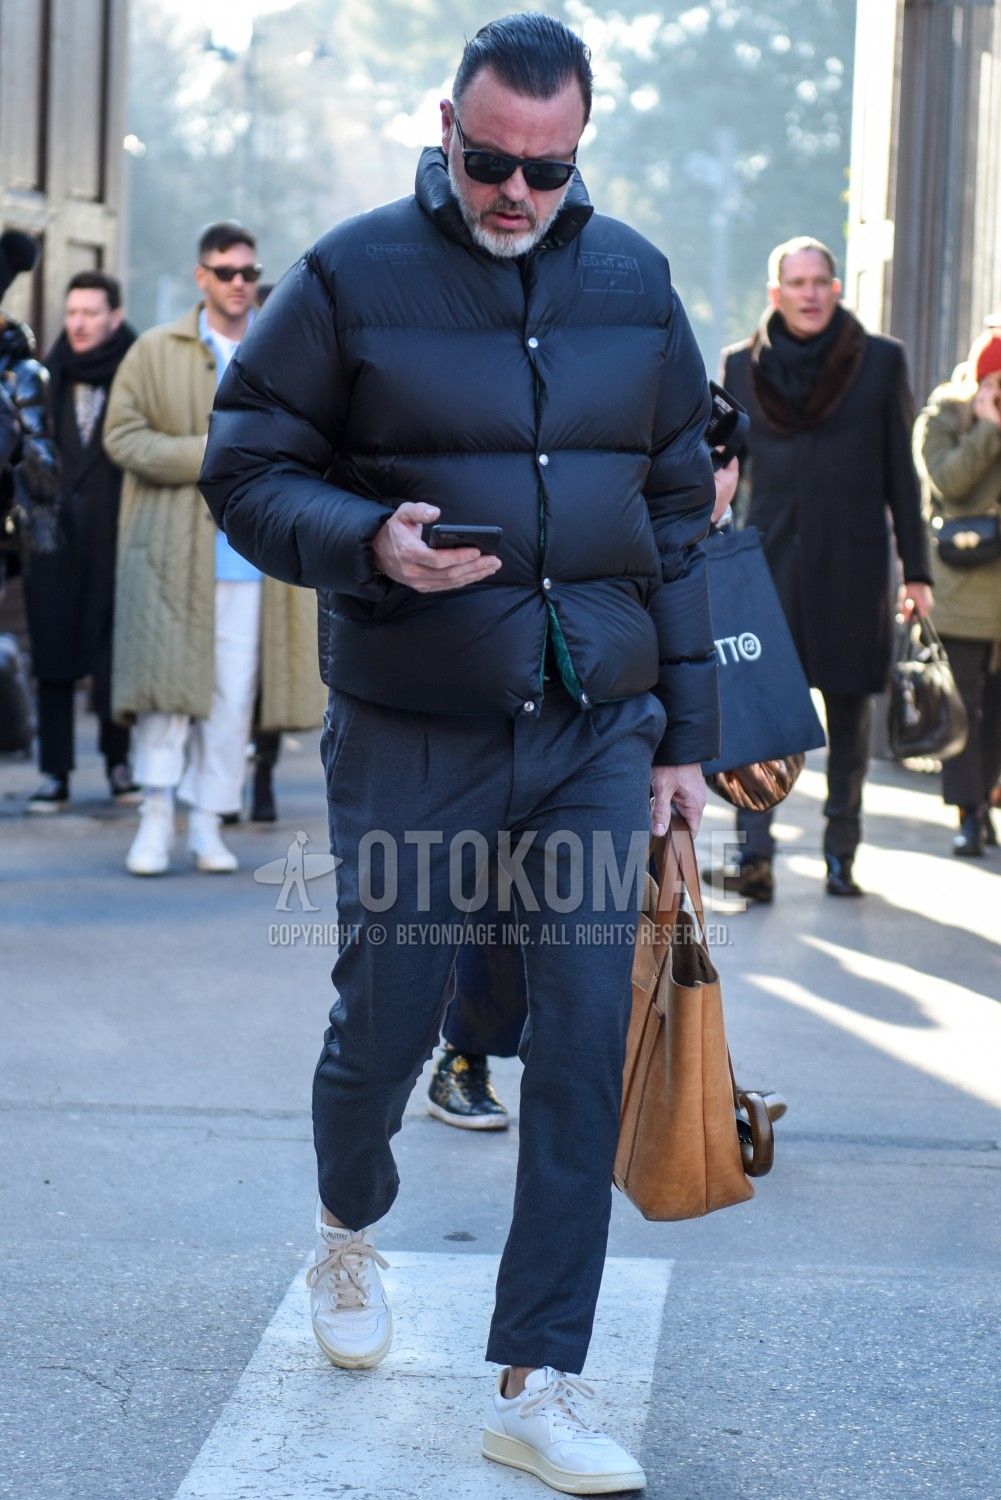 ダウンジャケットは黒でクールに 注目のメンズコーデ おすすめアイテムを紹介 メンズファッションメディア Otokomaeotokomae 男前研究所